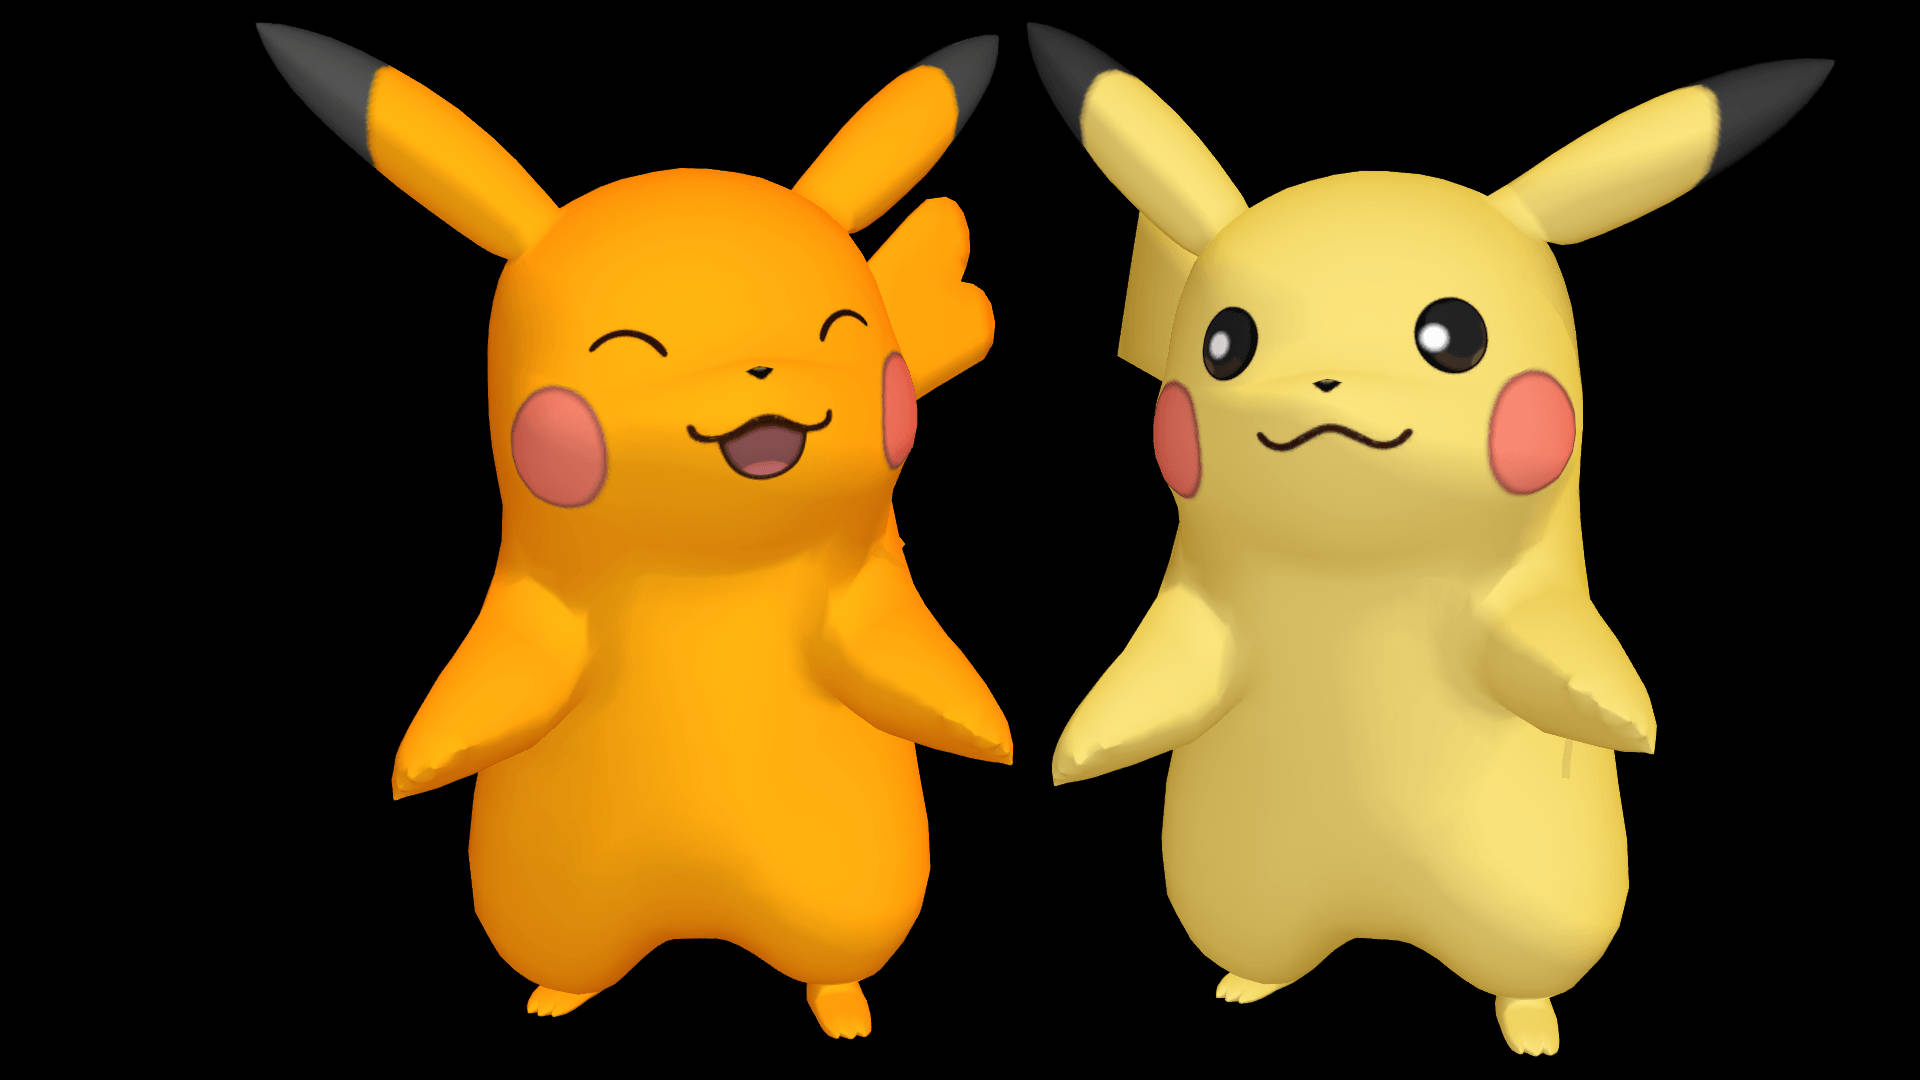 Pikachu 3d Shiny Pokémons Picture